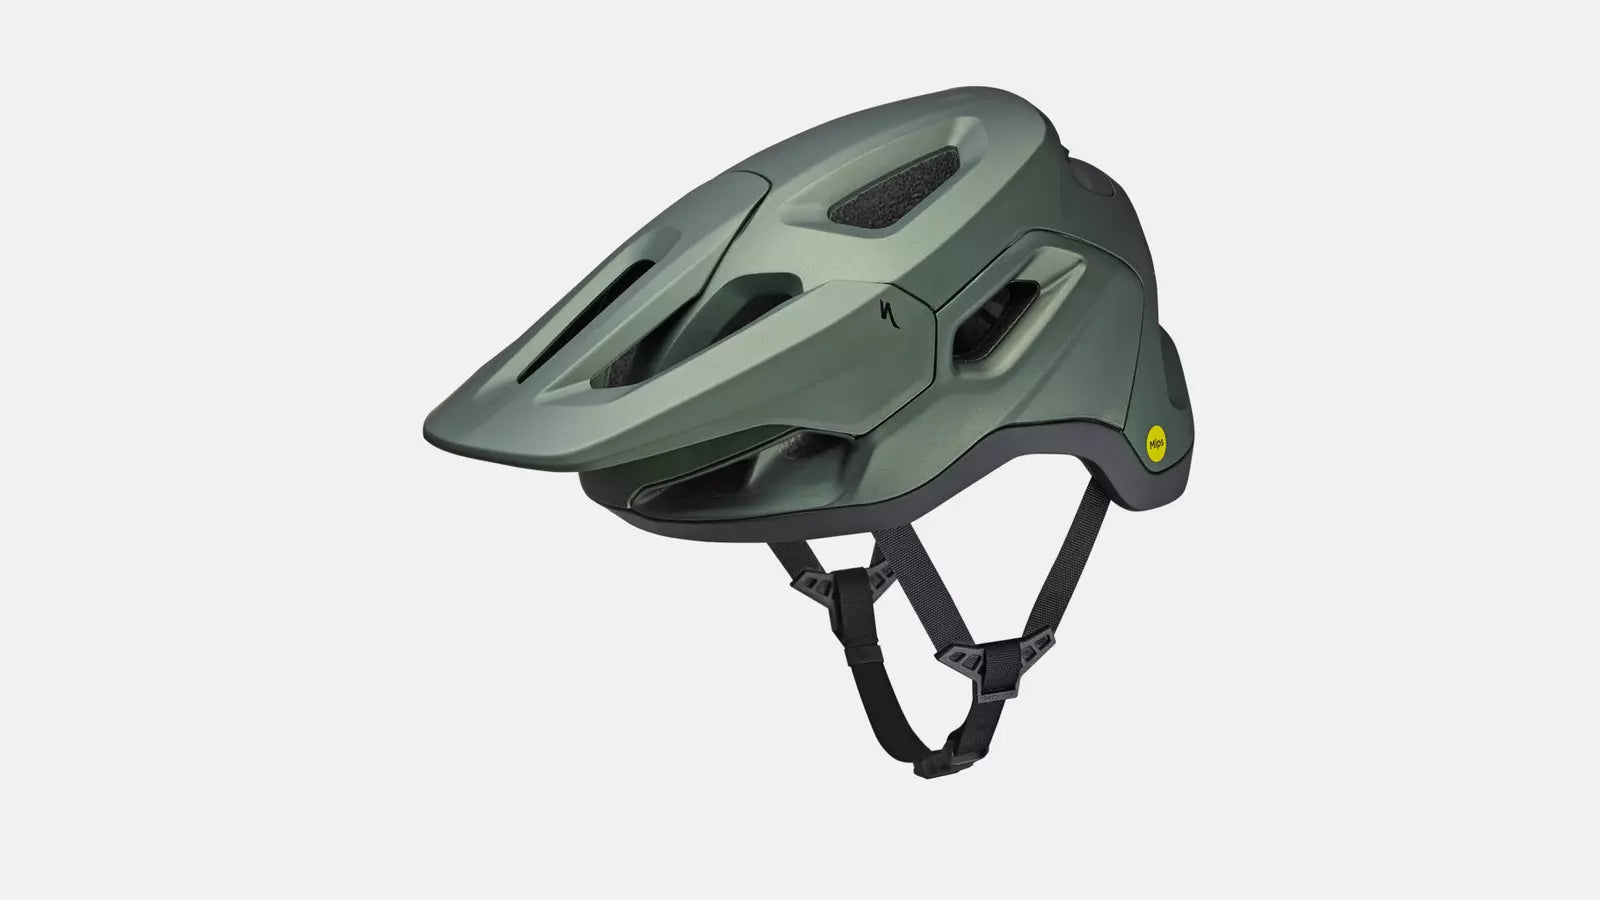 Matte Dark Green Tactic Mips Specialized Bike Helmet with visor